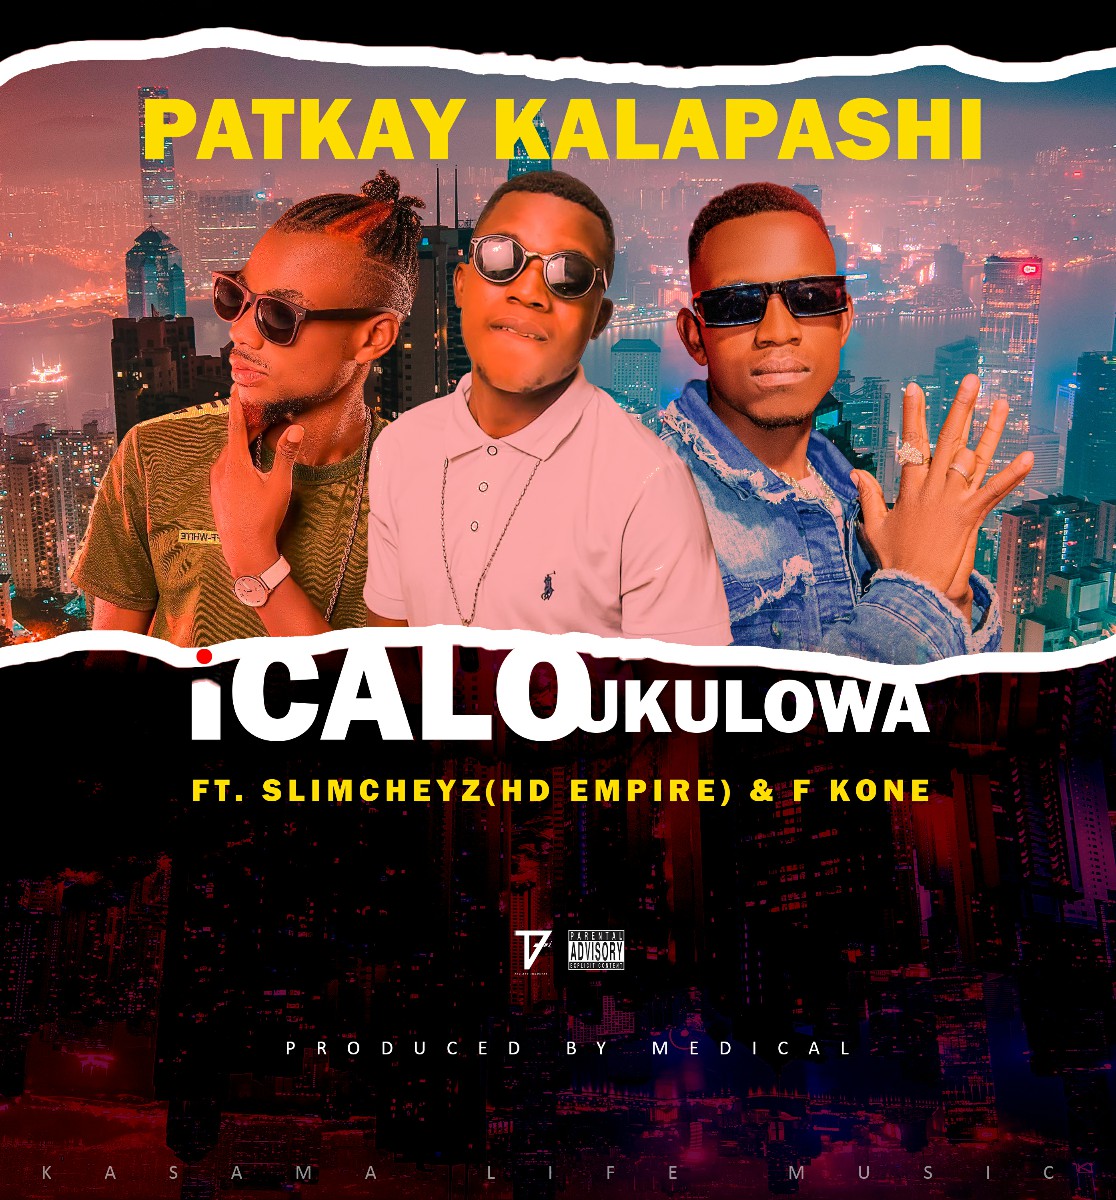 Pat Kay Kalapashi ft. Slimcheyz (HD Empire) & F Kone - Icalo Ukulowa